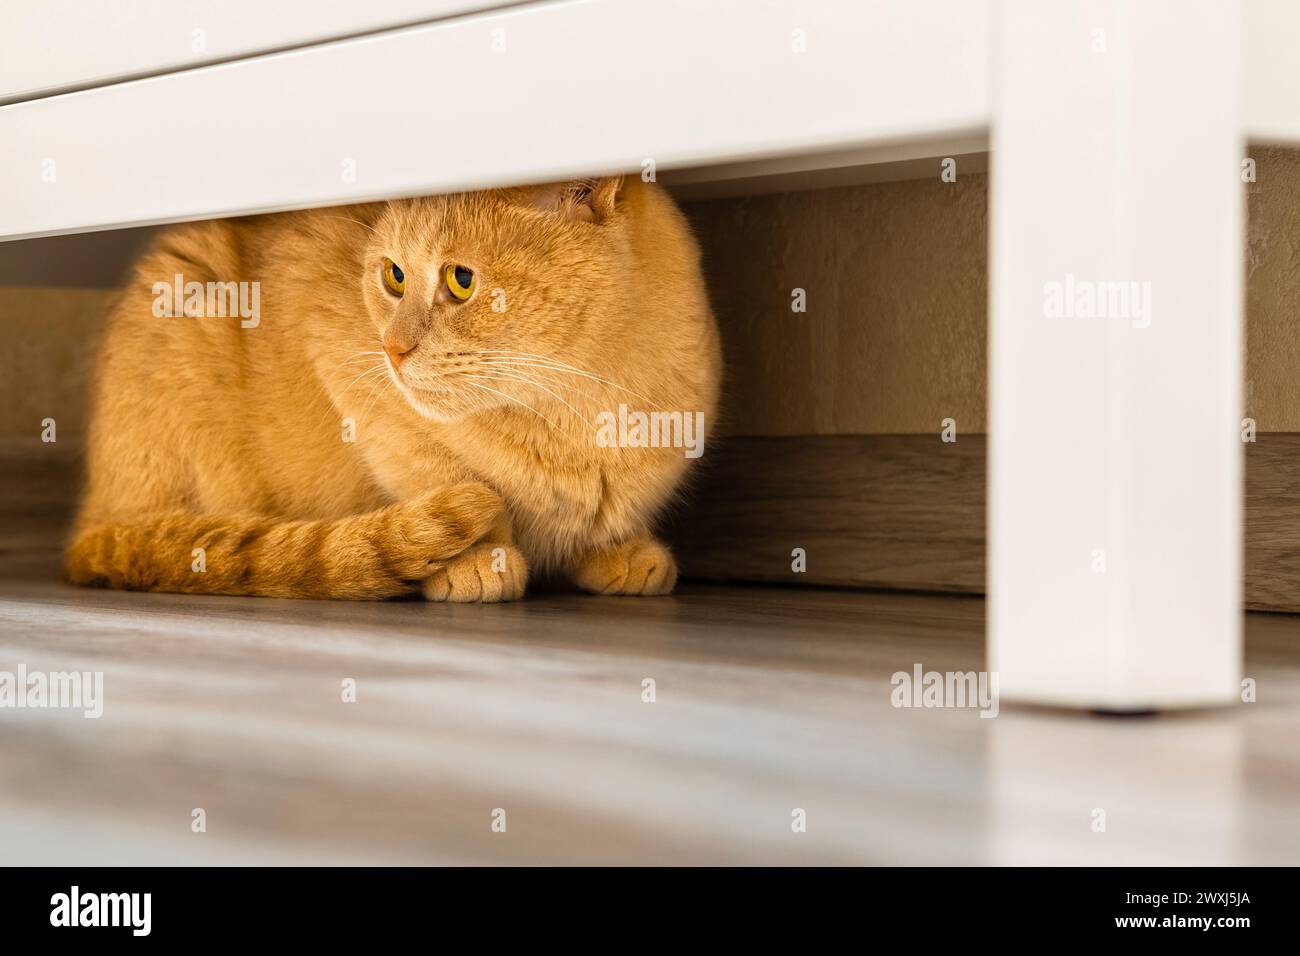 Die Katze versteckt sich unter dem Schrank vor Menschen. Katze spielt Verstecken. Abweichendes Verhalten bei Katzen. Schüchterne Katze. Stockfoto